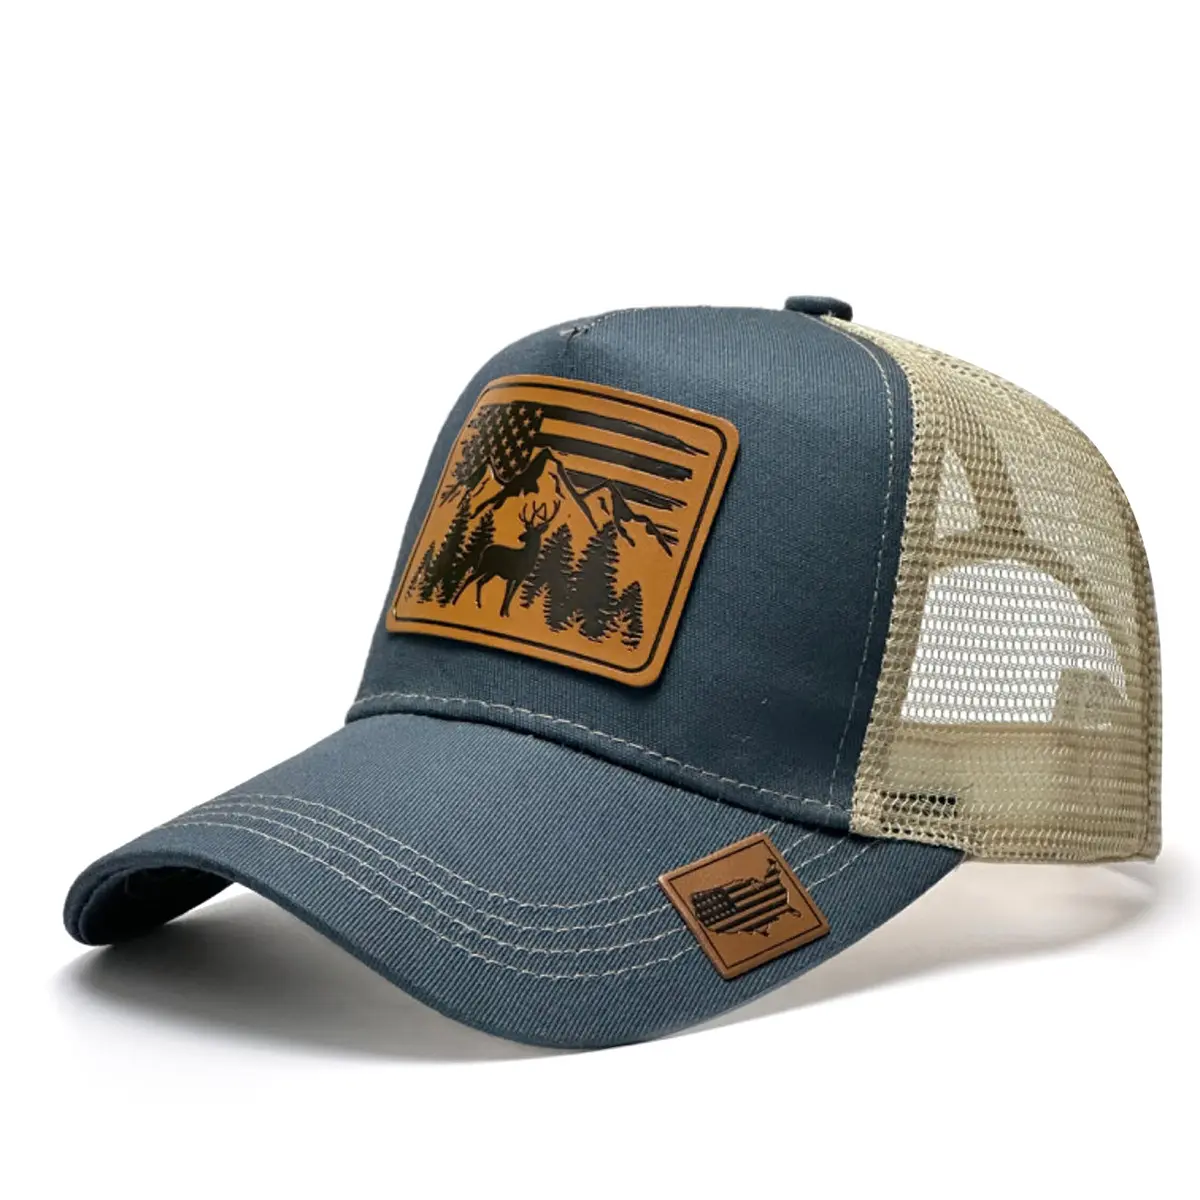 Novo verão chapéus moda bonés homens mulheres esportes bonés em relevo personalizado couro patch trucker hat